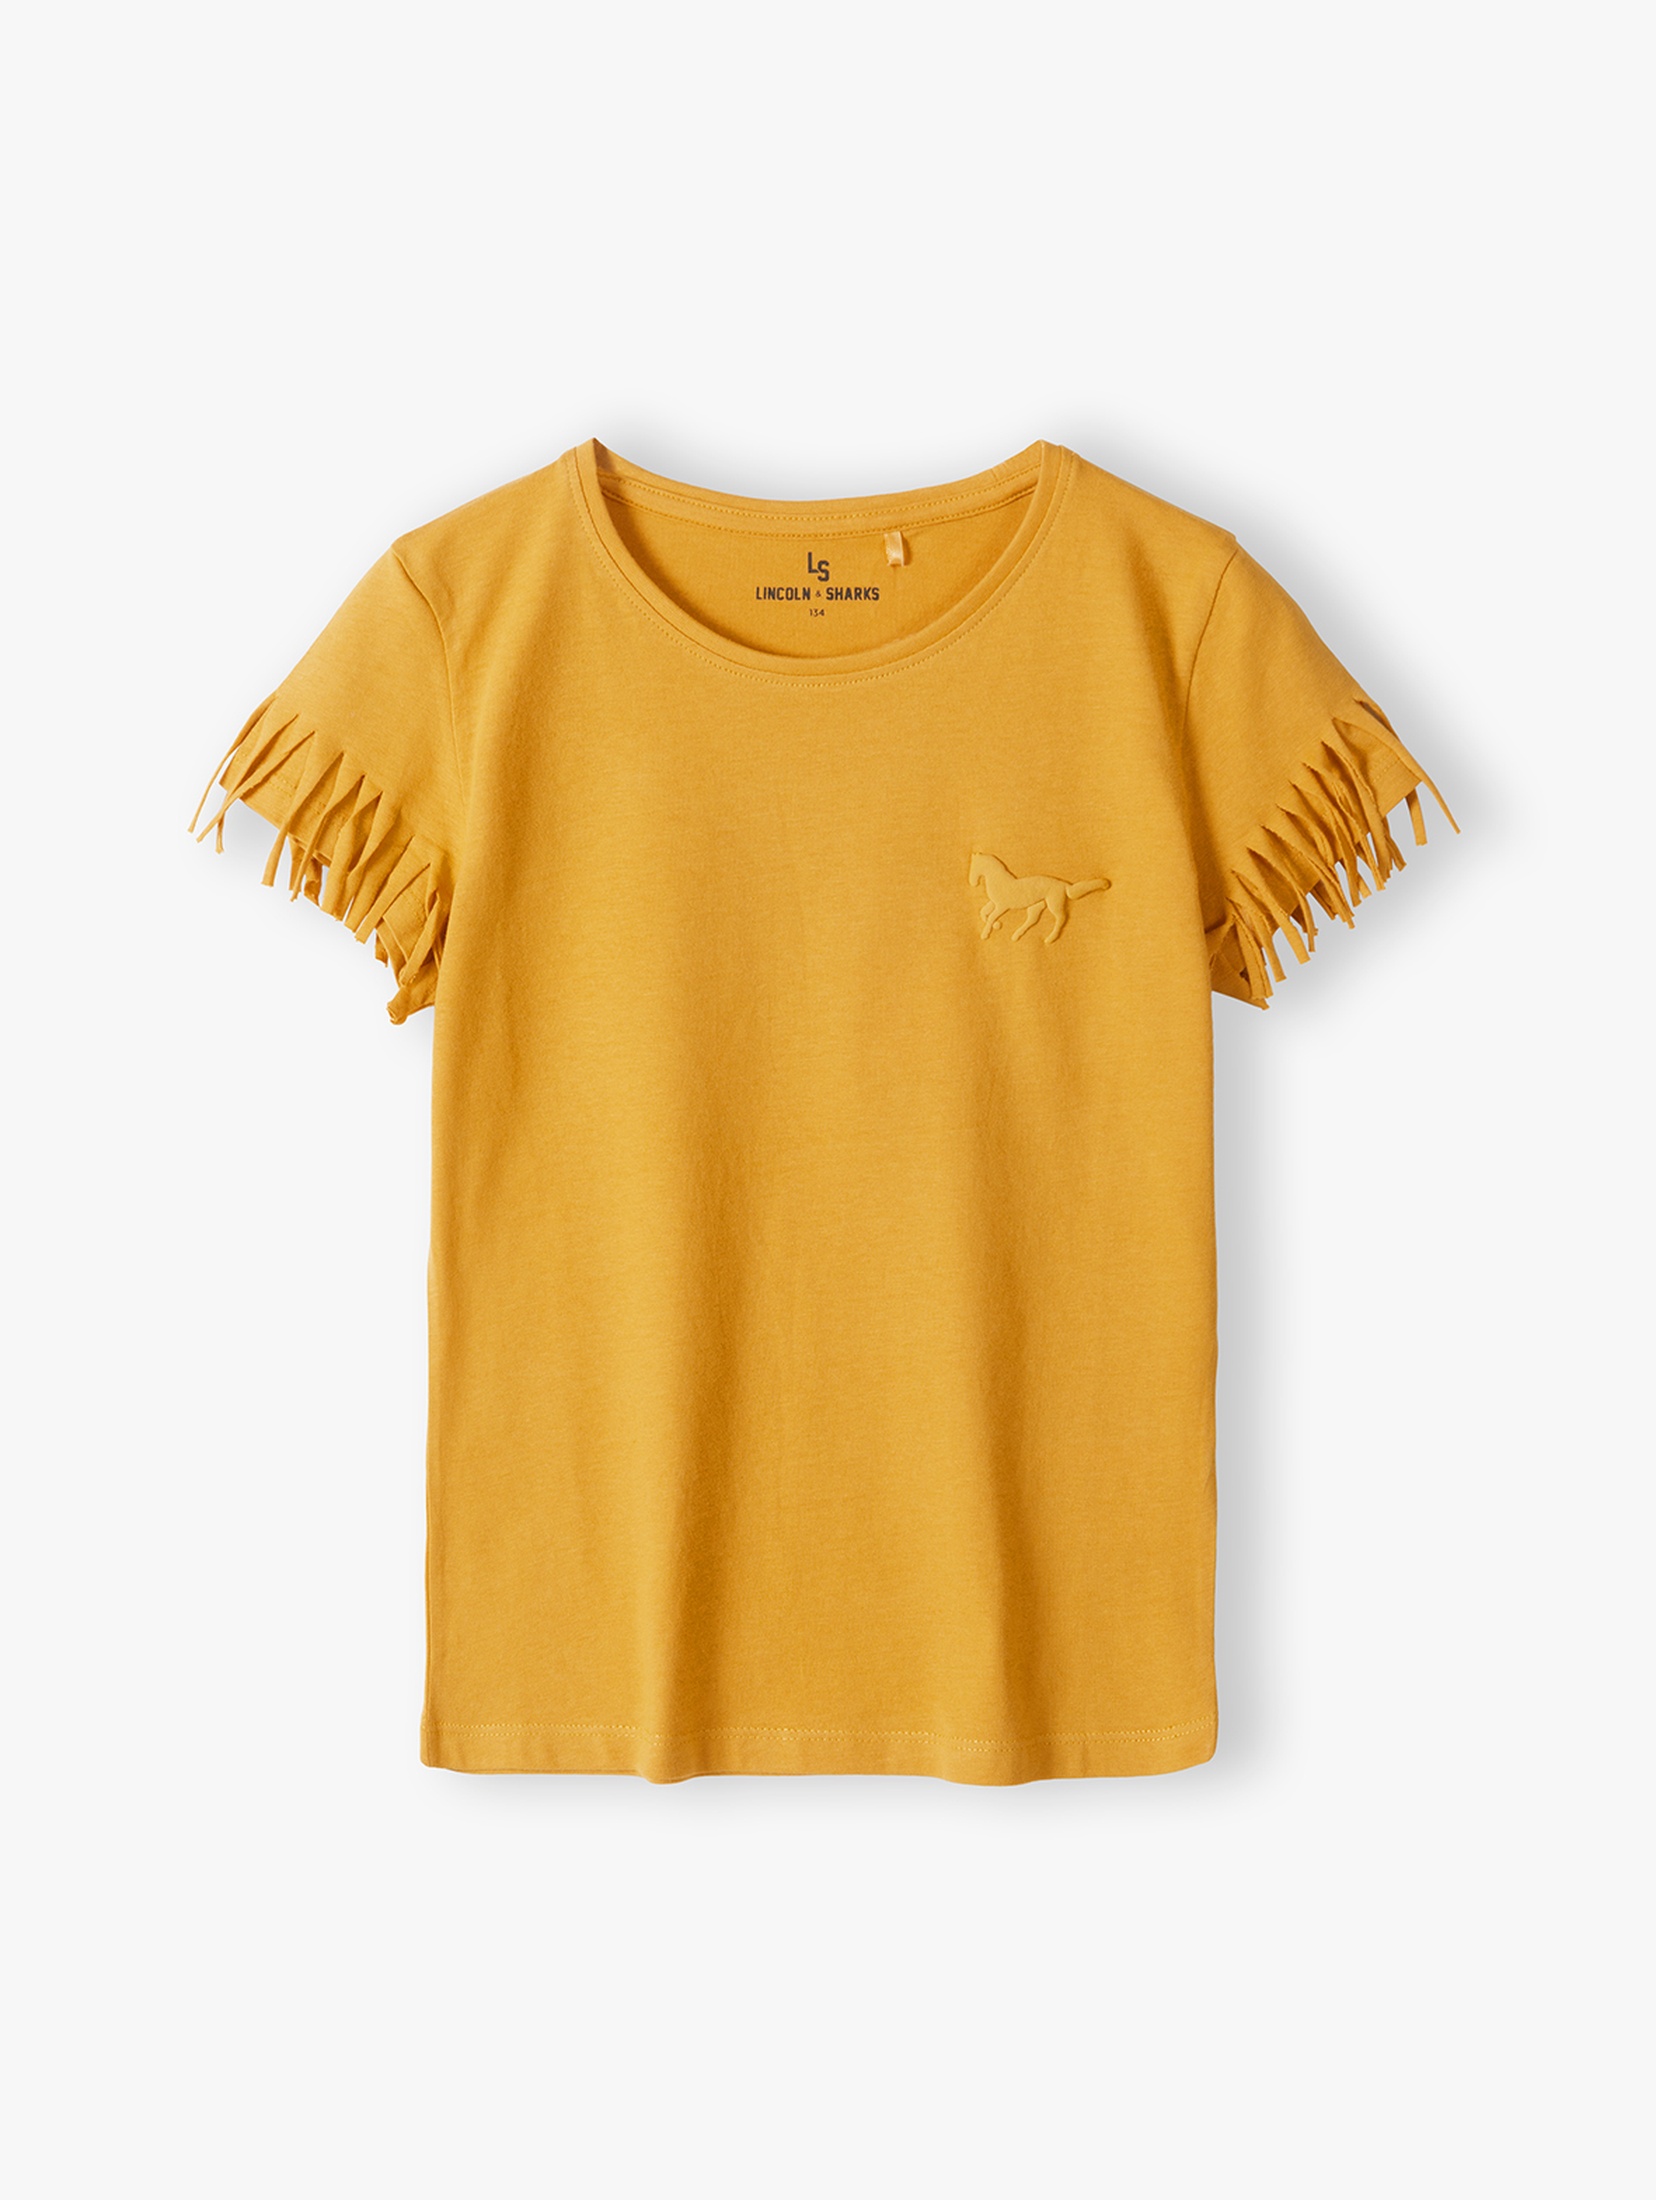 Żółta koszulka dziewczęca z frędzlami przy rękawach